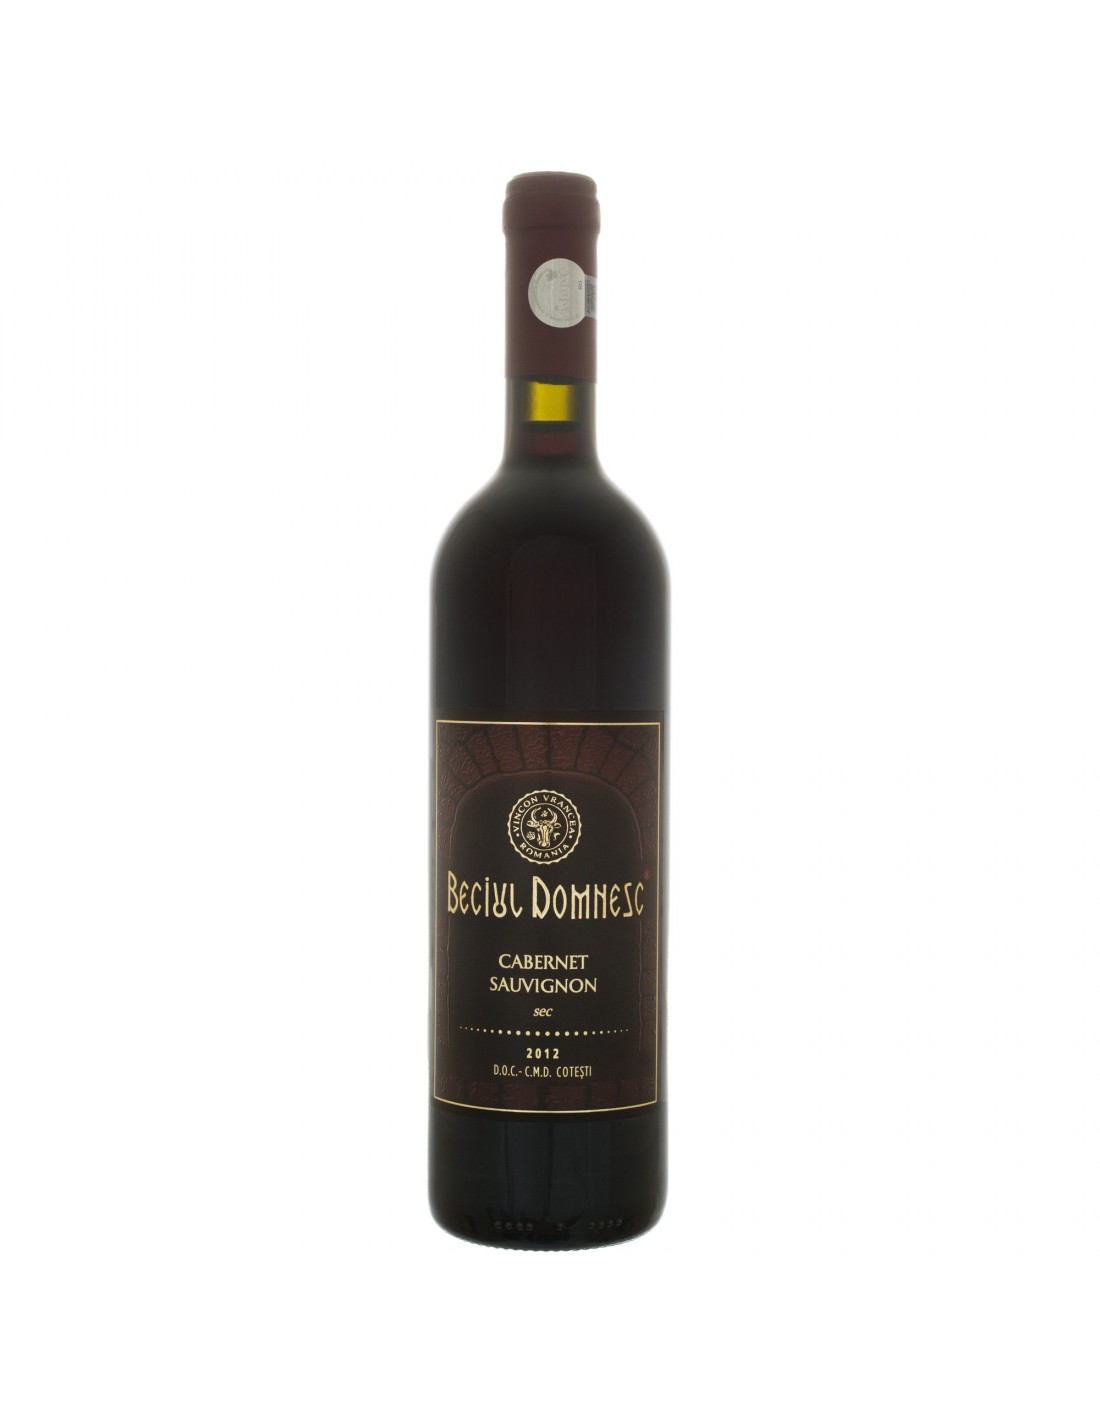 Vin rosu sec, Cabernet Sauvignon, Beciul Domnesc Cotesti, 0.75L, 12% alc., Republica Moldova alcooldiscount.ro